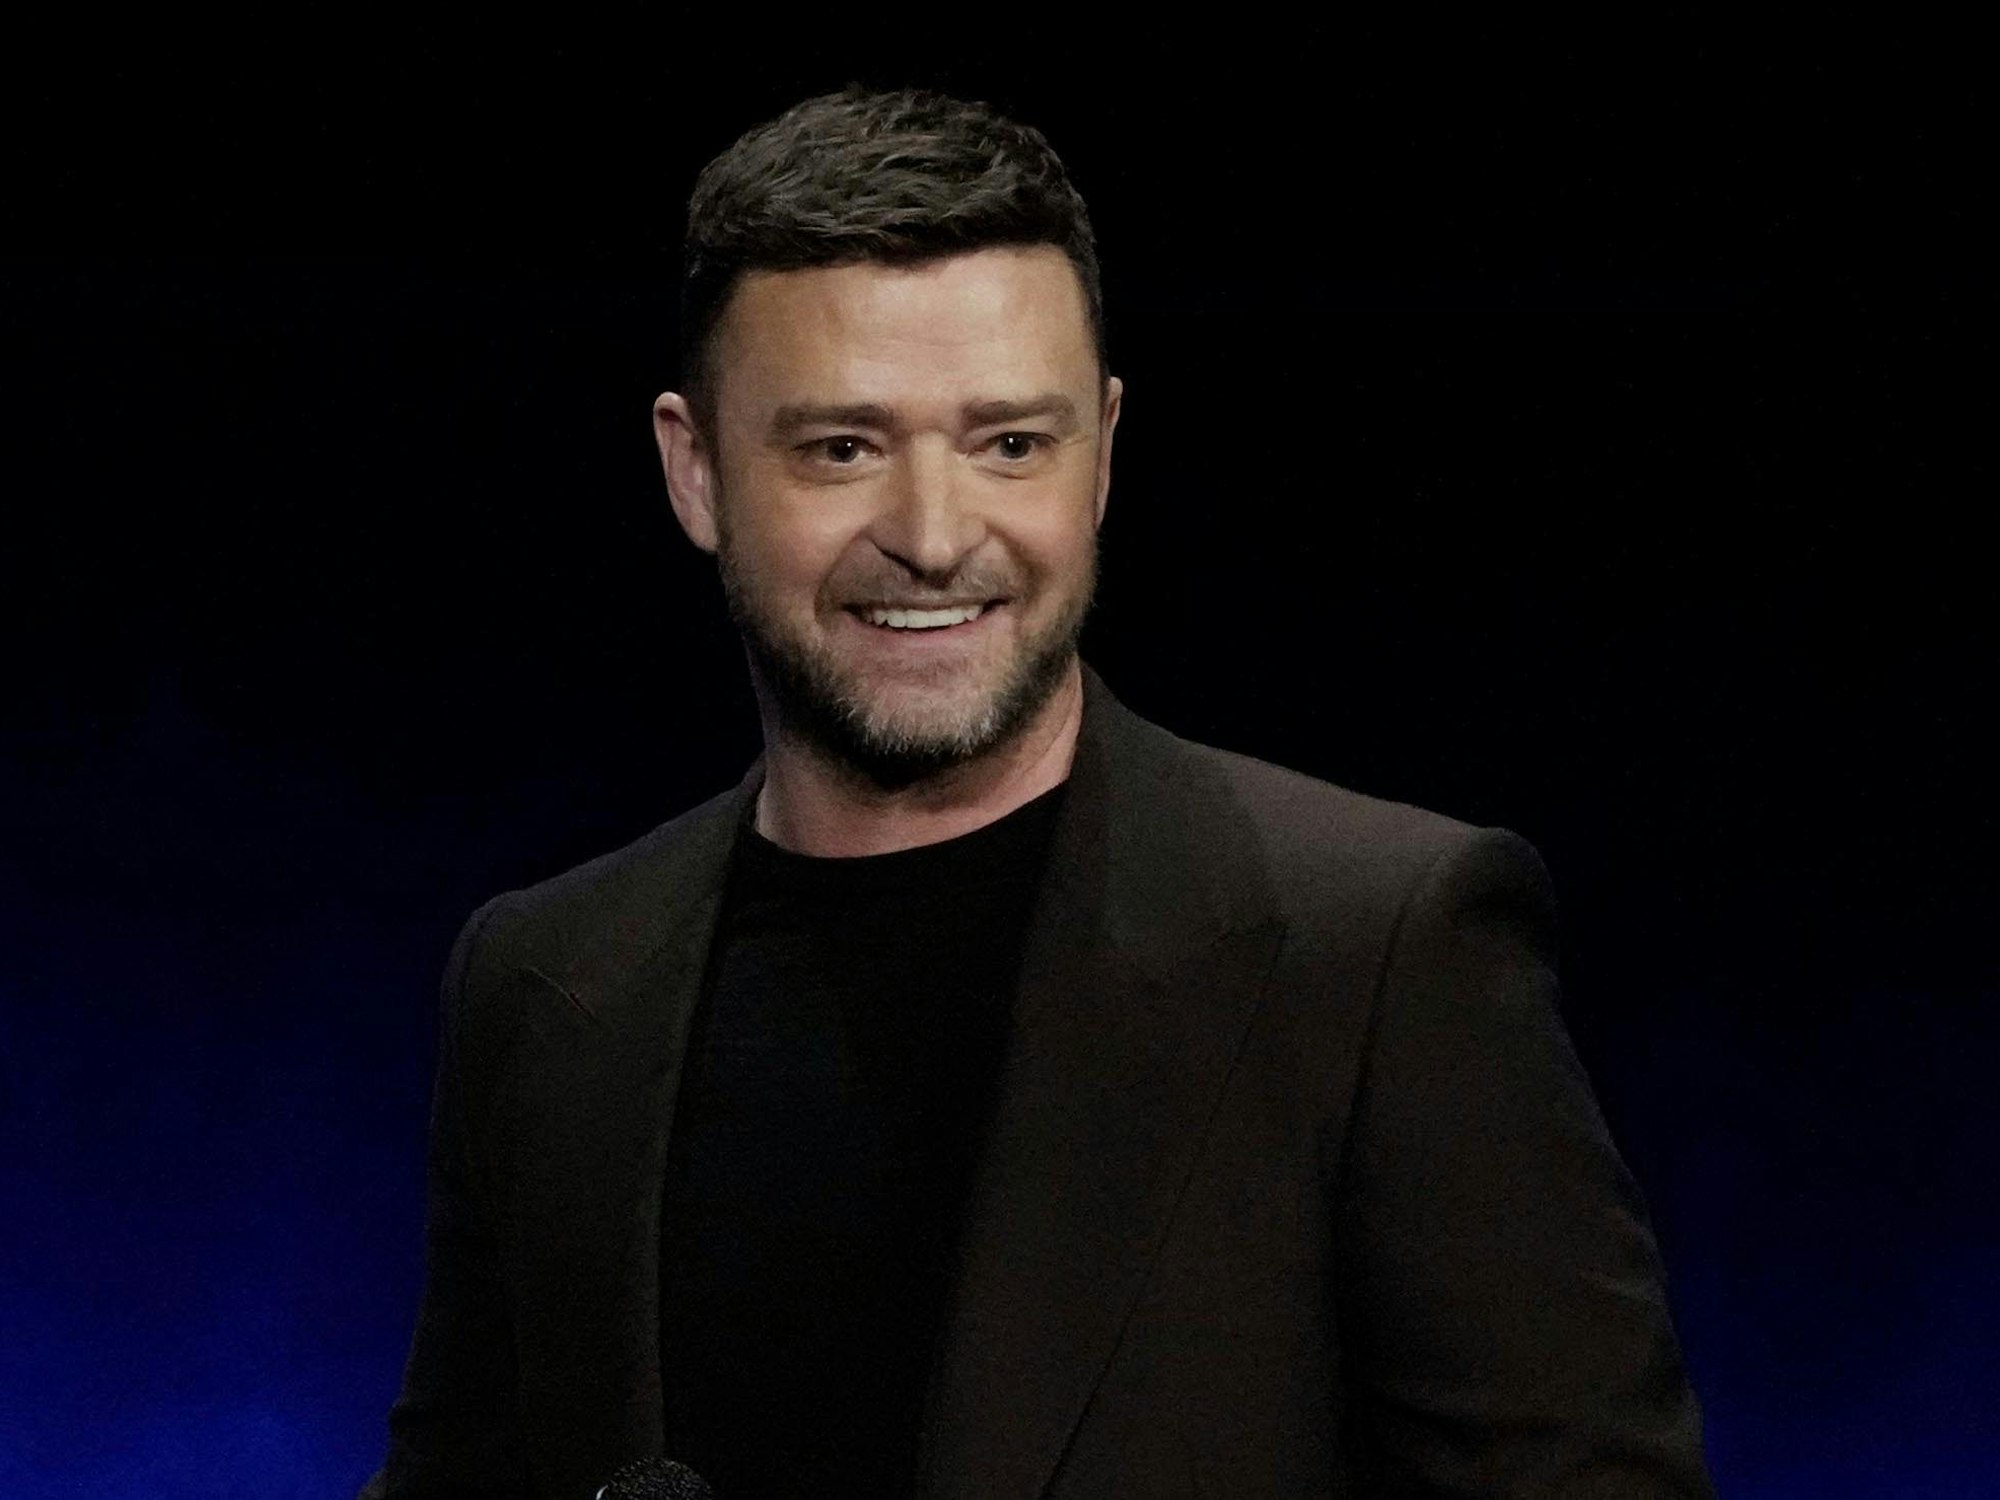 Justin Timberlake in schwarzen Klamotten auf einer Bühne, er lächelt.